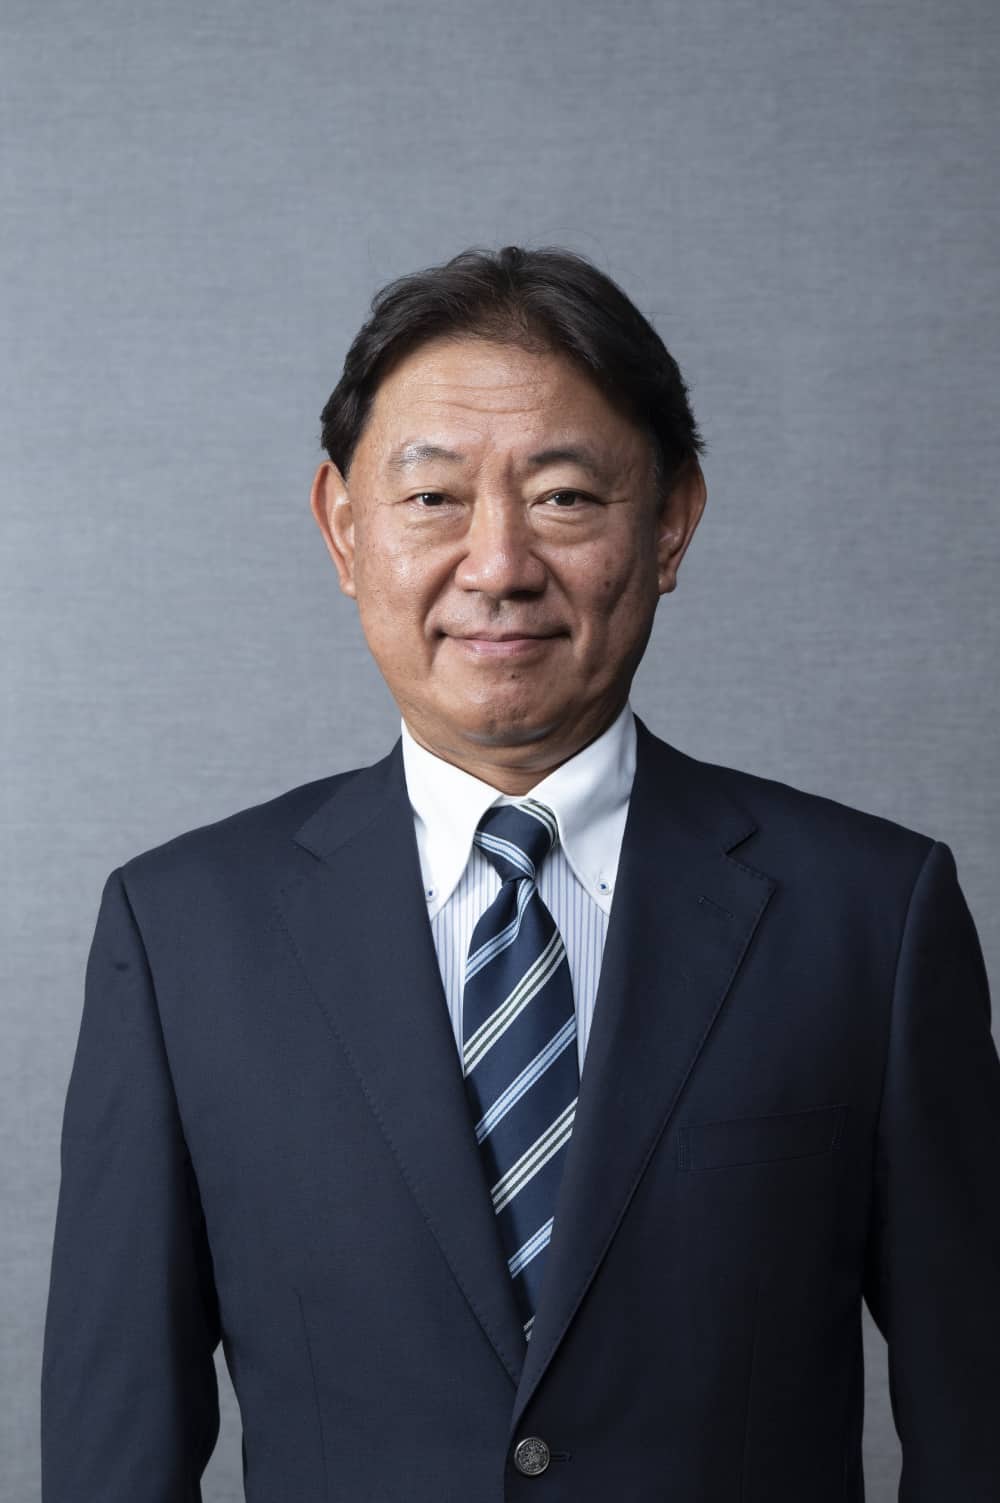 <small>Hiệu trưởng trường Đại học Quốc tế Y tế và Phúc lợi Nhật Bản</small><br/>
GS. TS. Yasuhiro Suzuki
